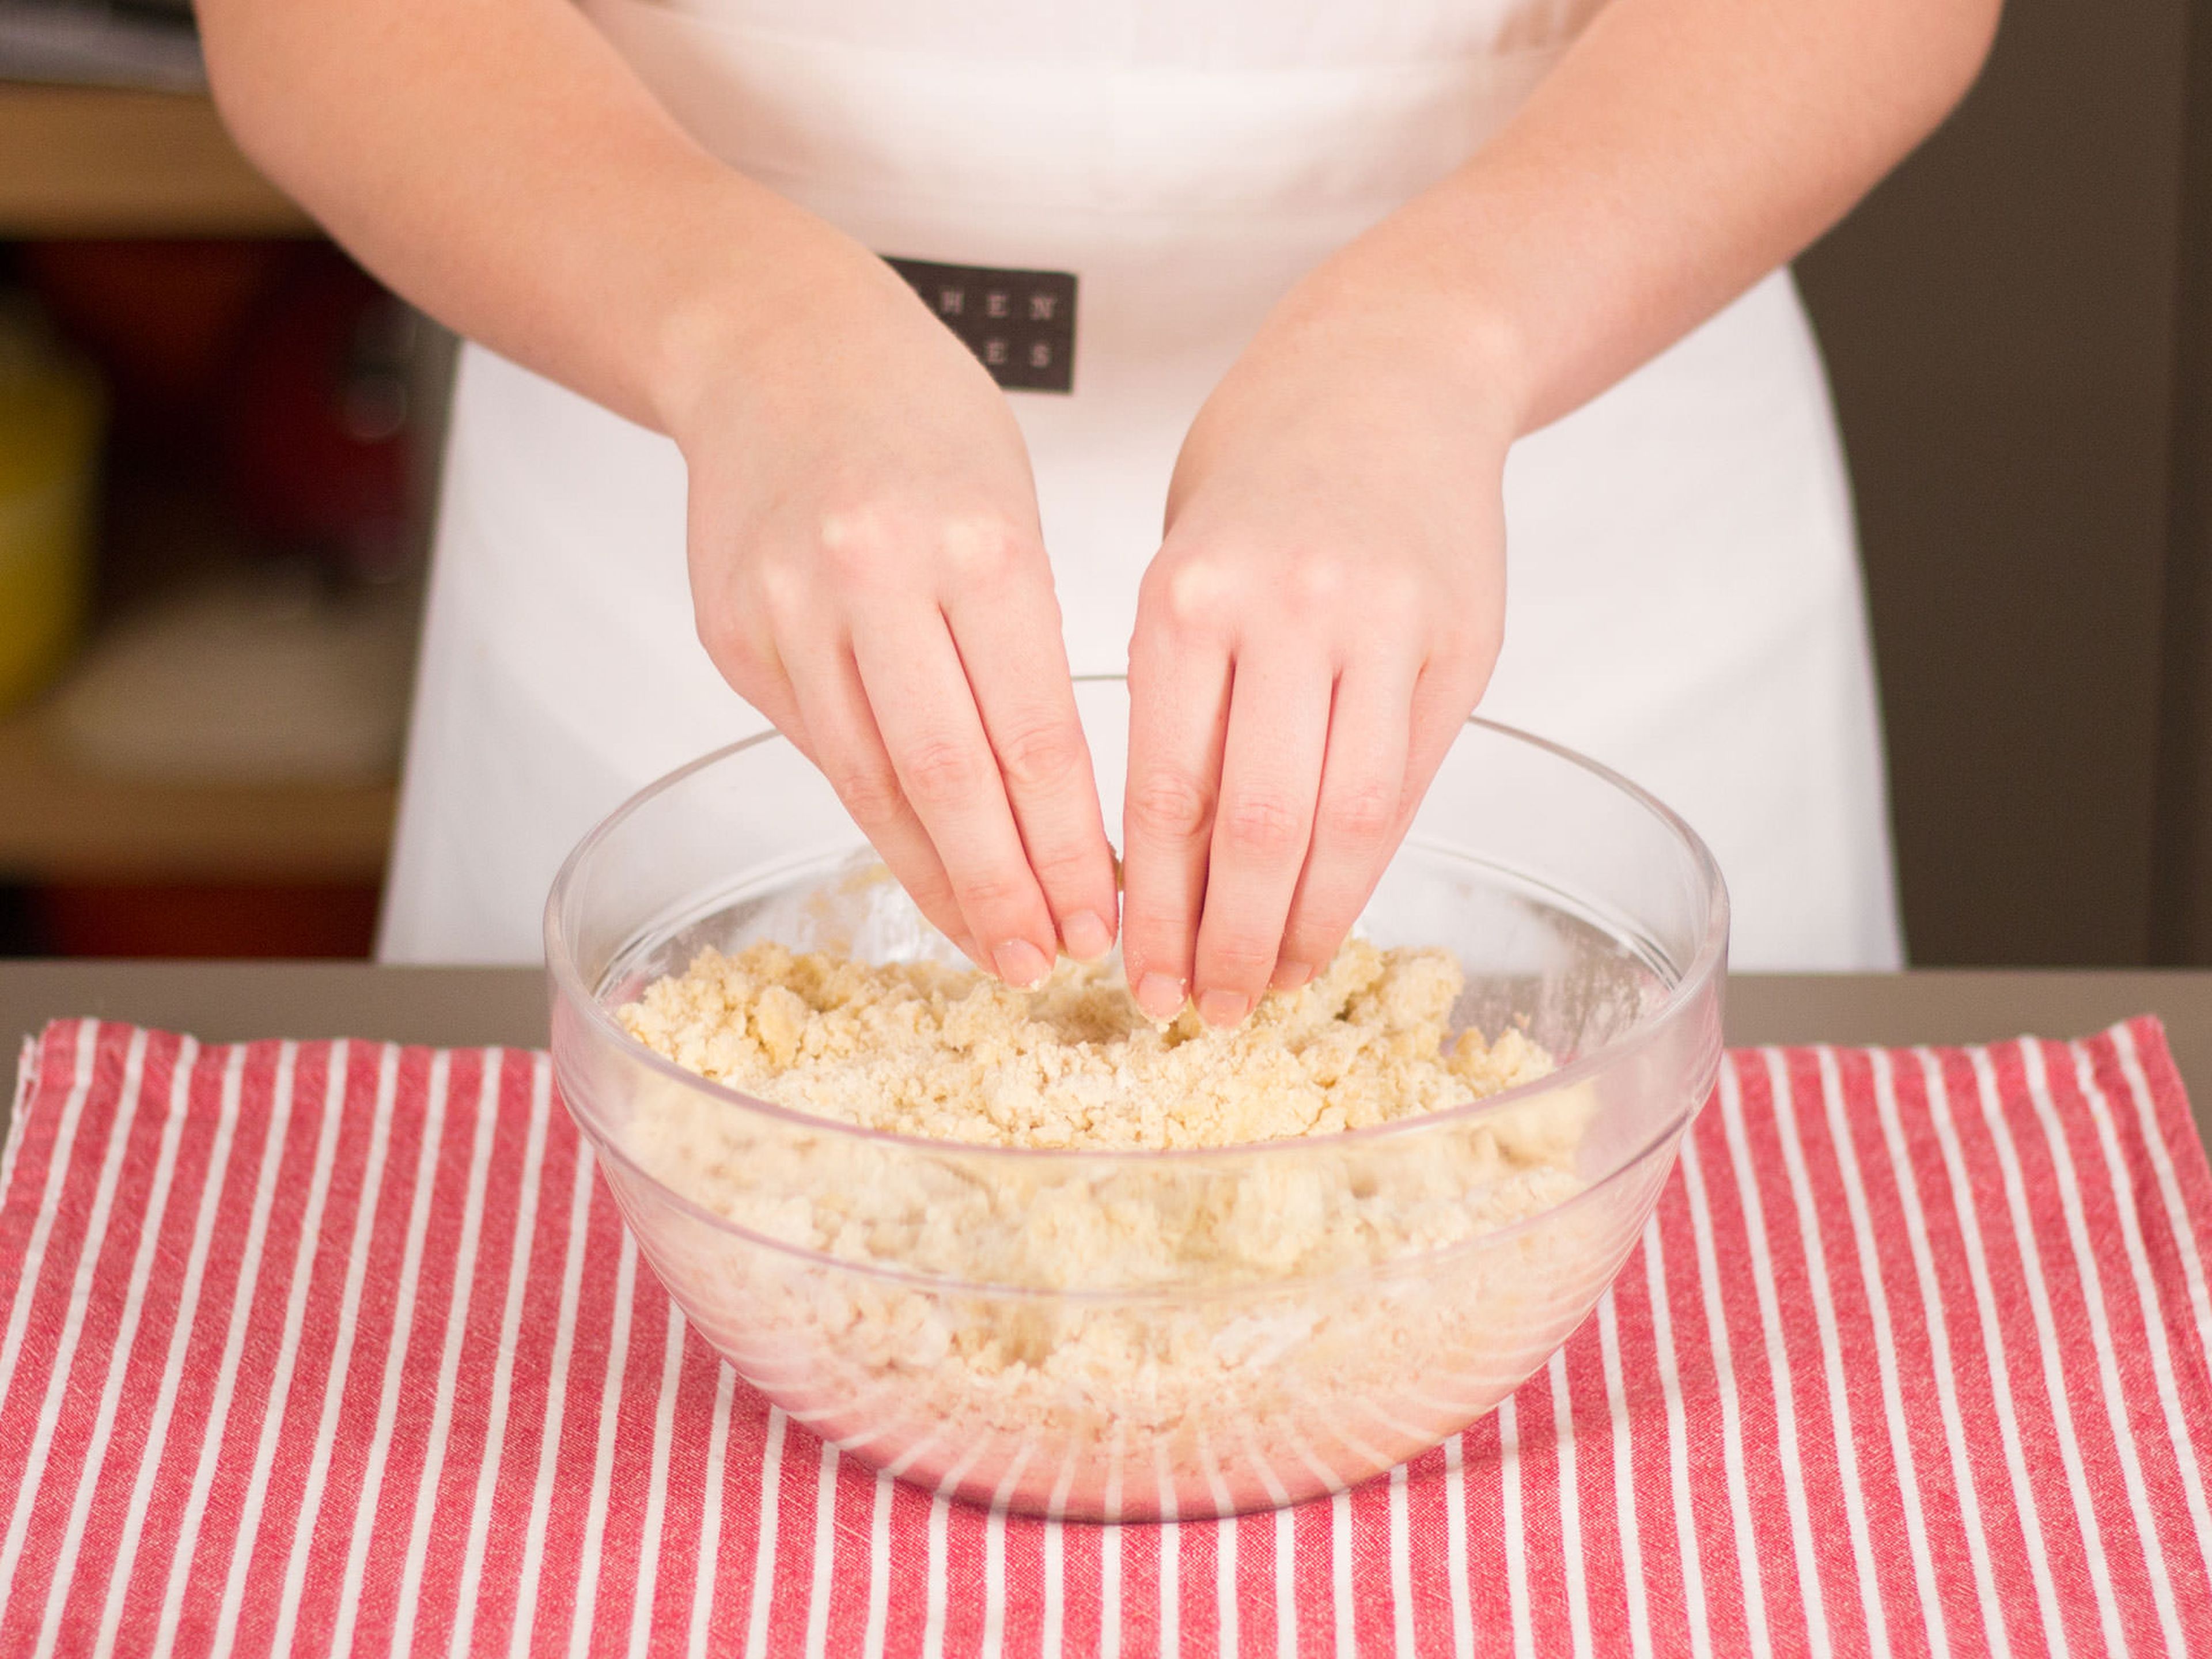 Restliche Butter, Zucker, Mehl sowie Vanillezucker in einer großen Schüssel mischen und mit den Händen zu groben Streuseln formen.